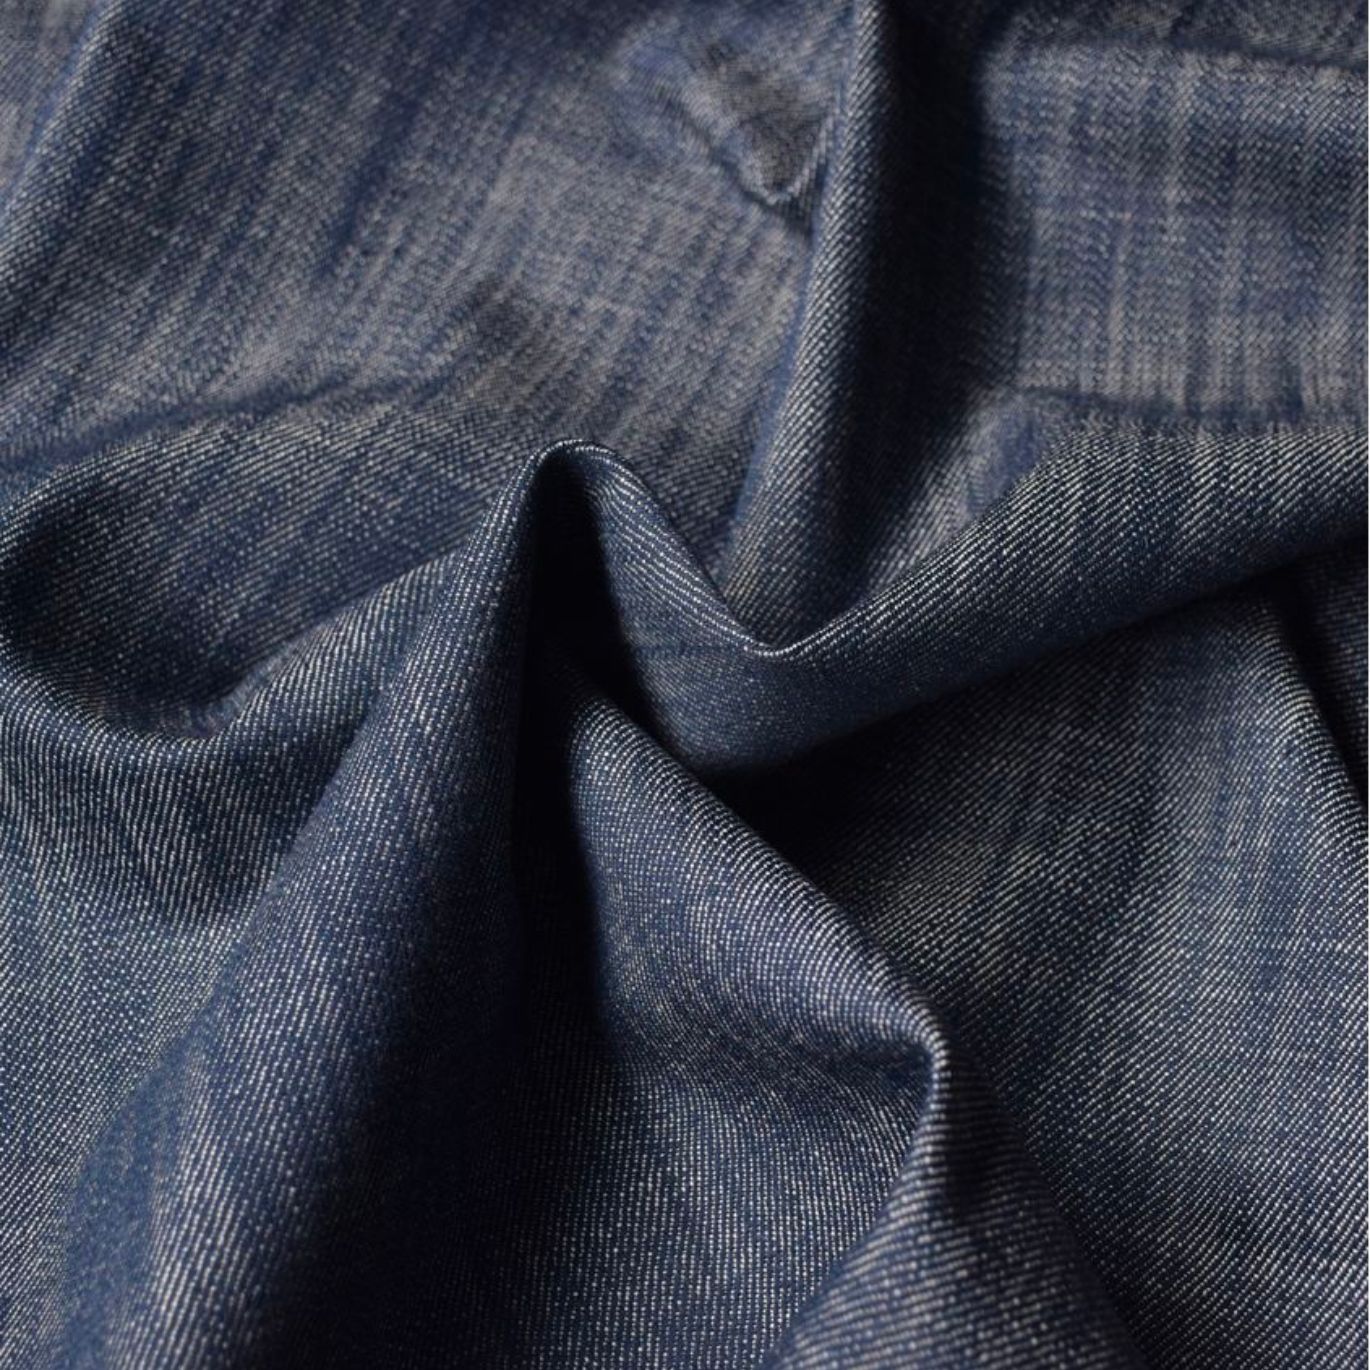 Tissu Jean Souple Navy Blue par Cousette